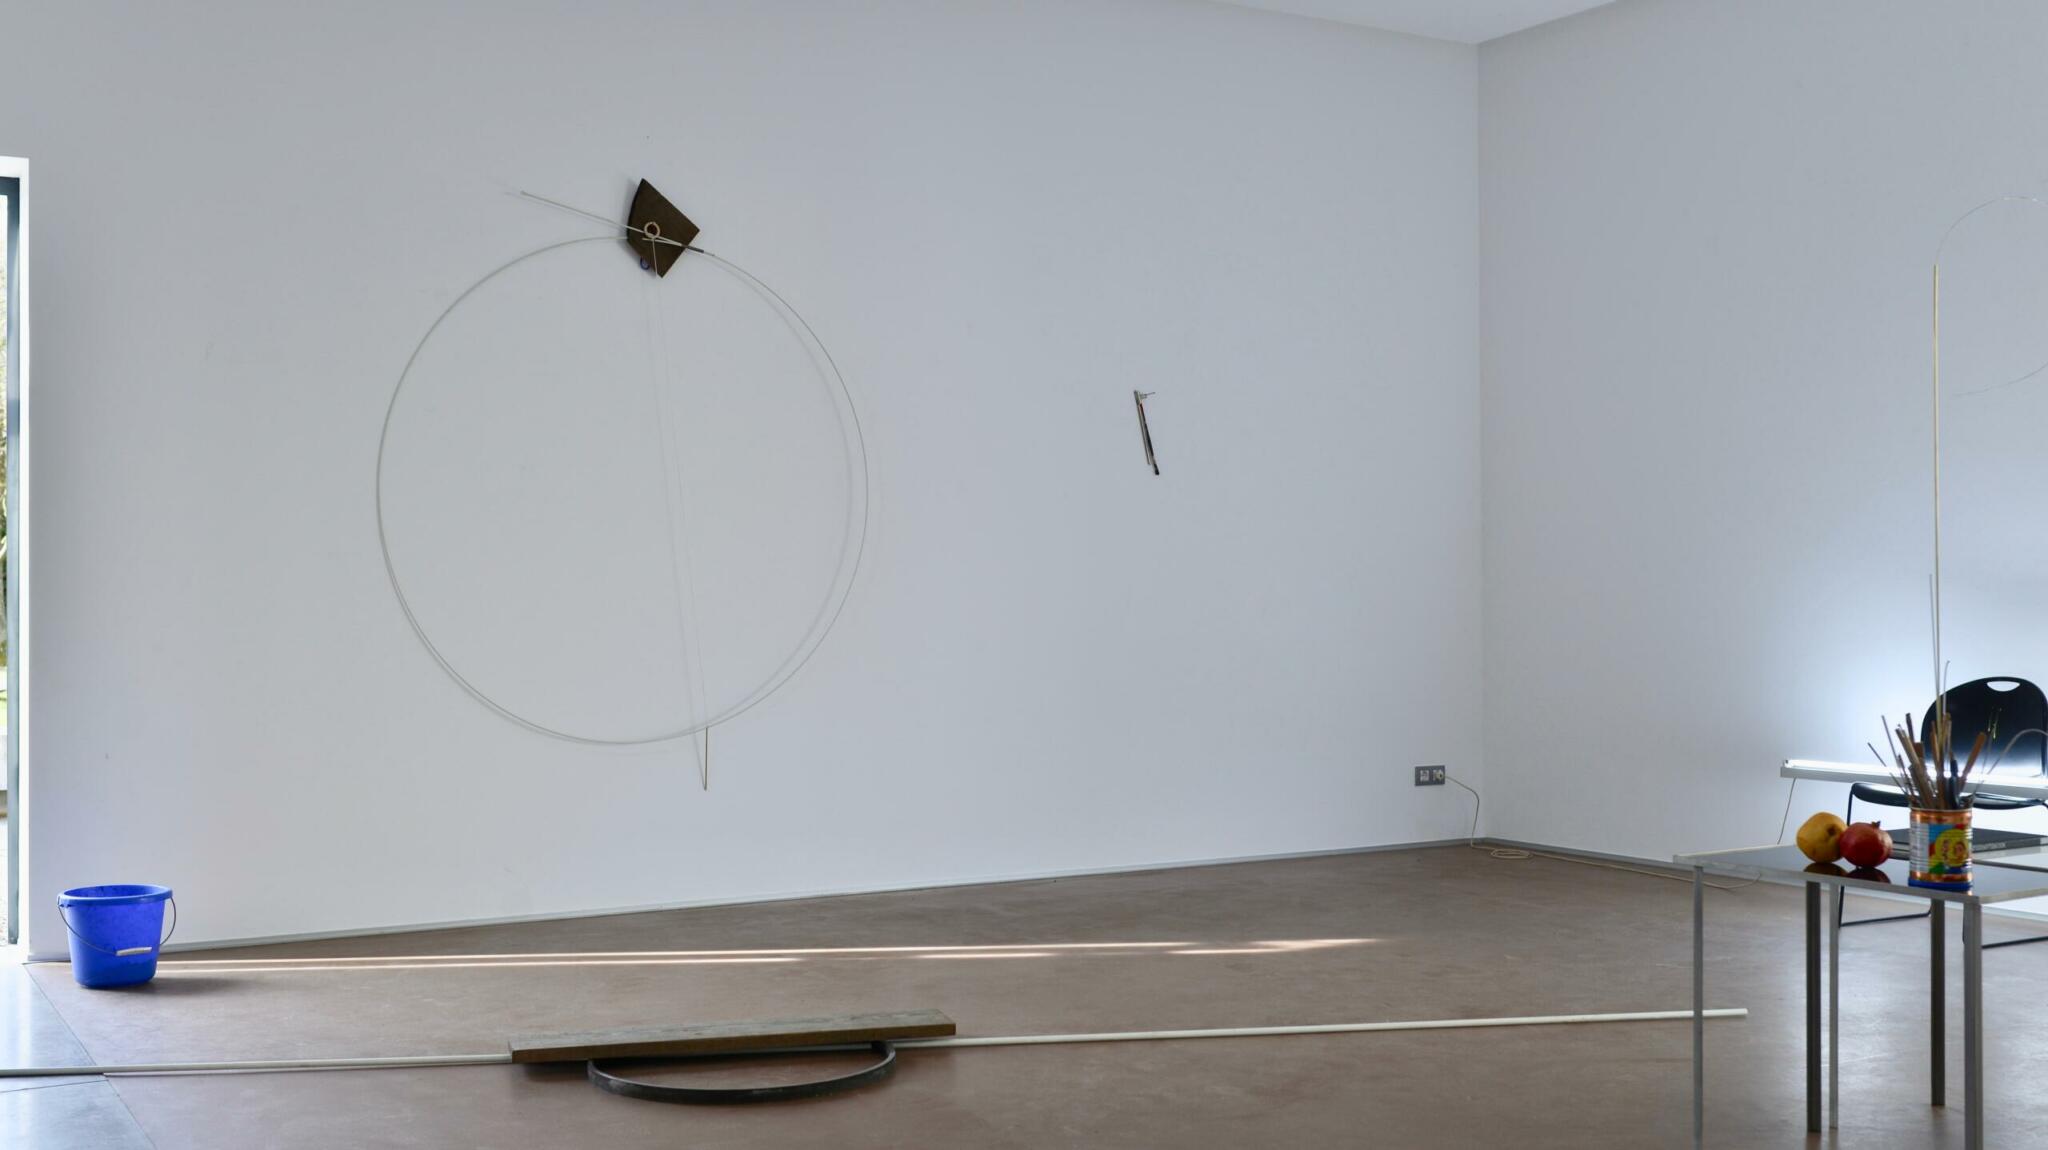 Studio, 2021, Roland Kollnitz, Ausstellungsansichten